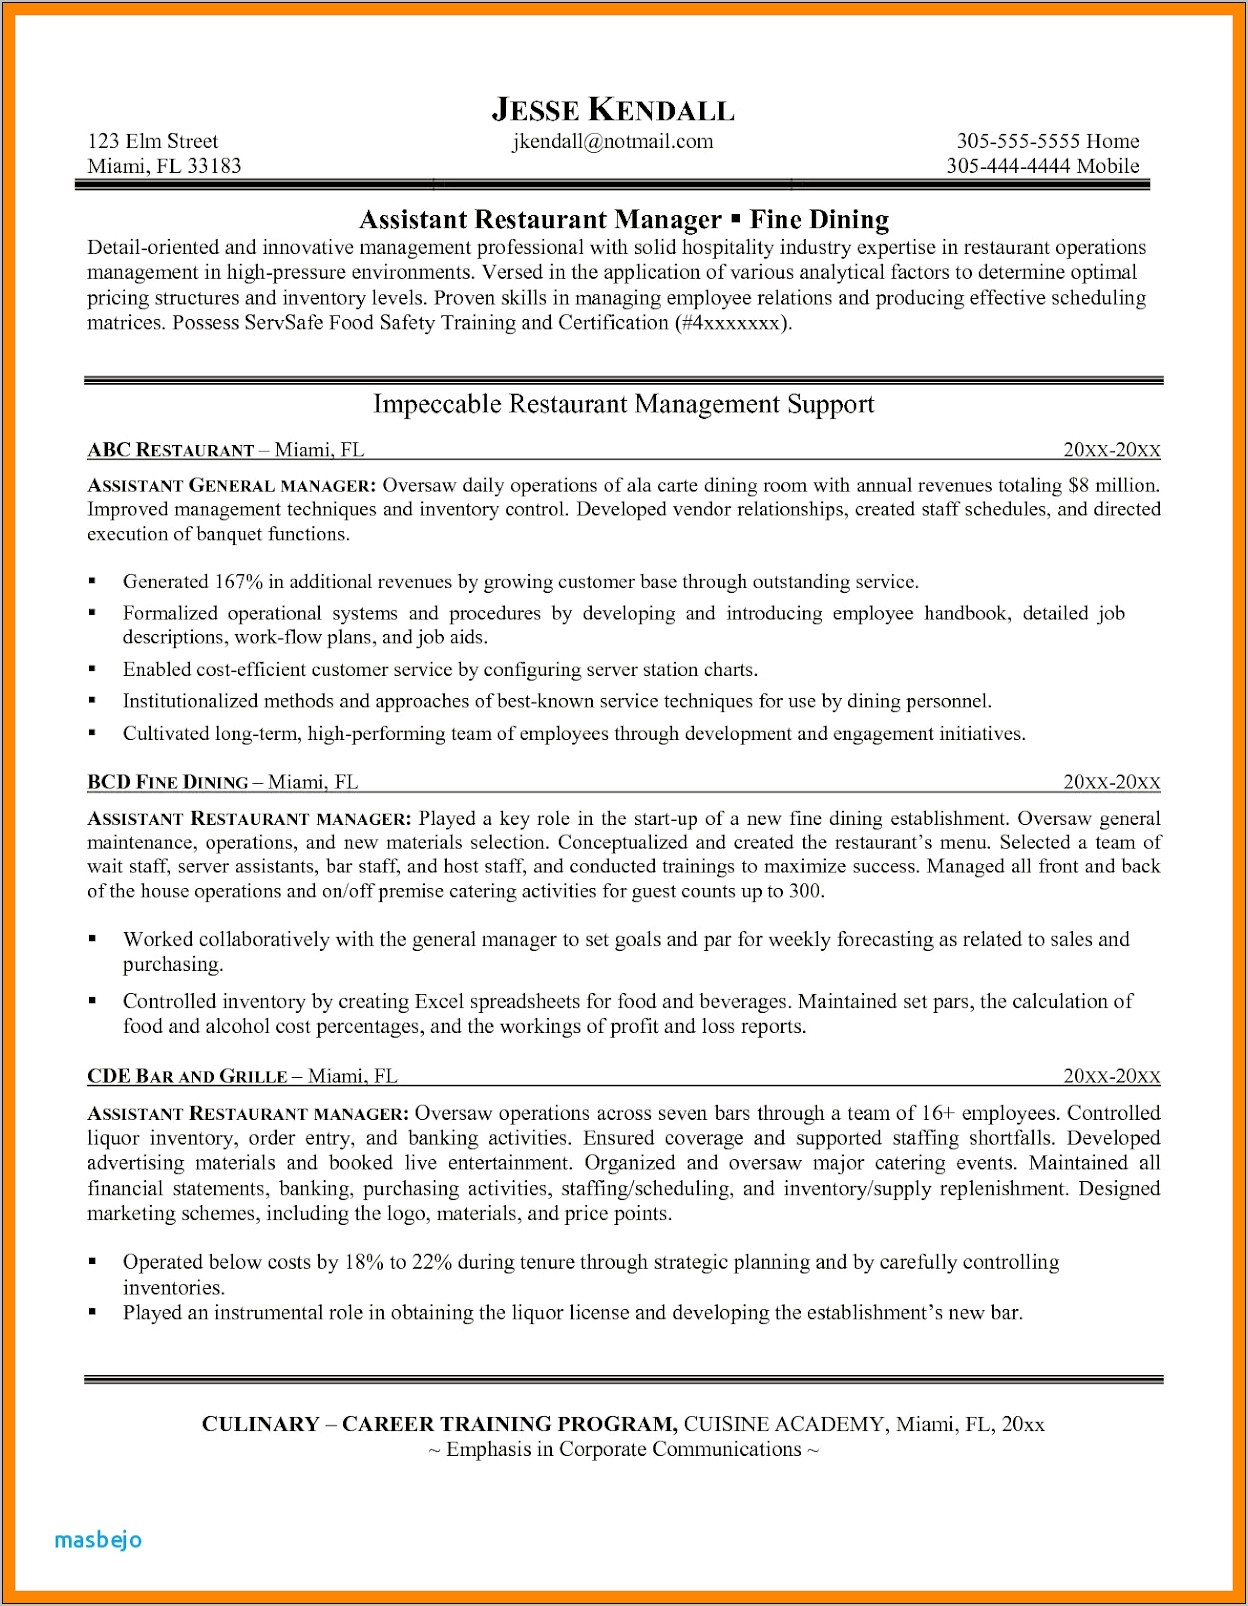 Resume For Restaurant Manager Pdf